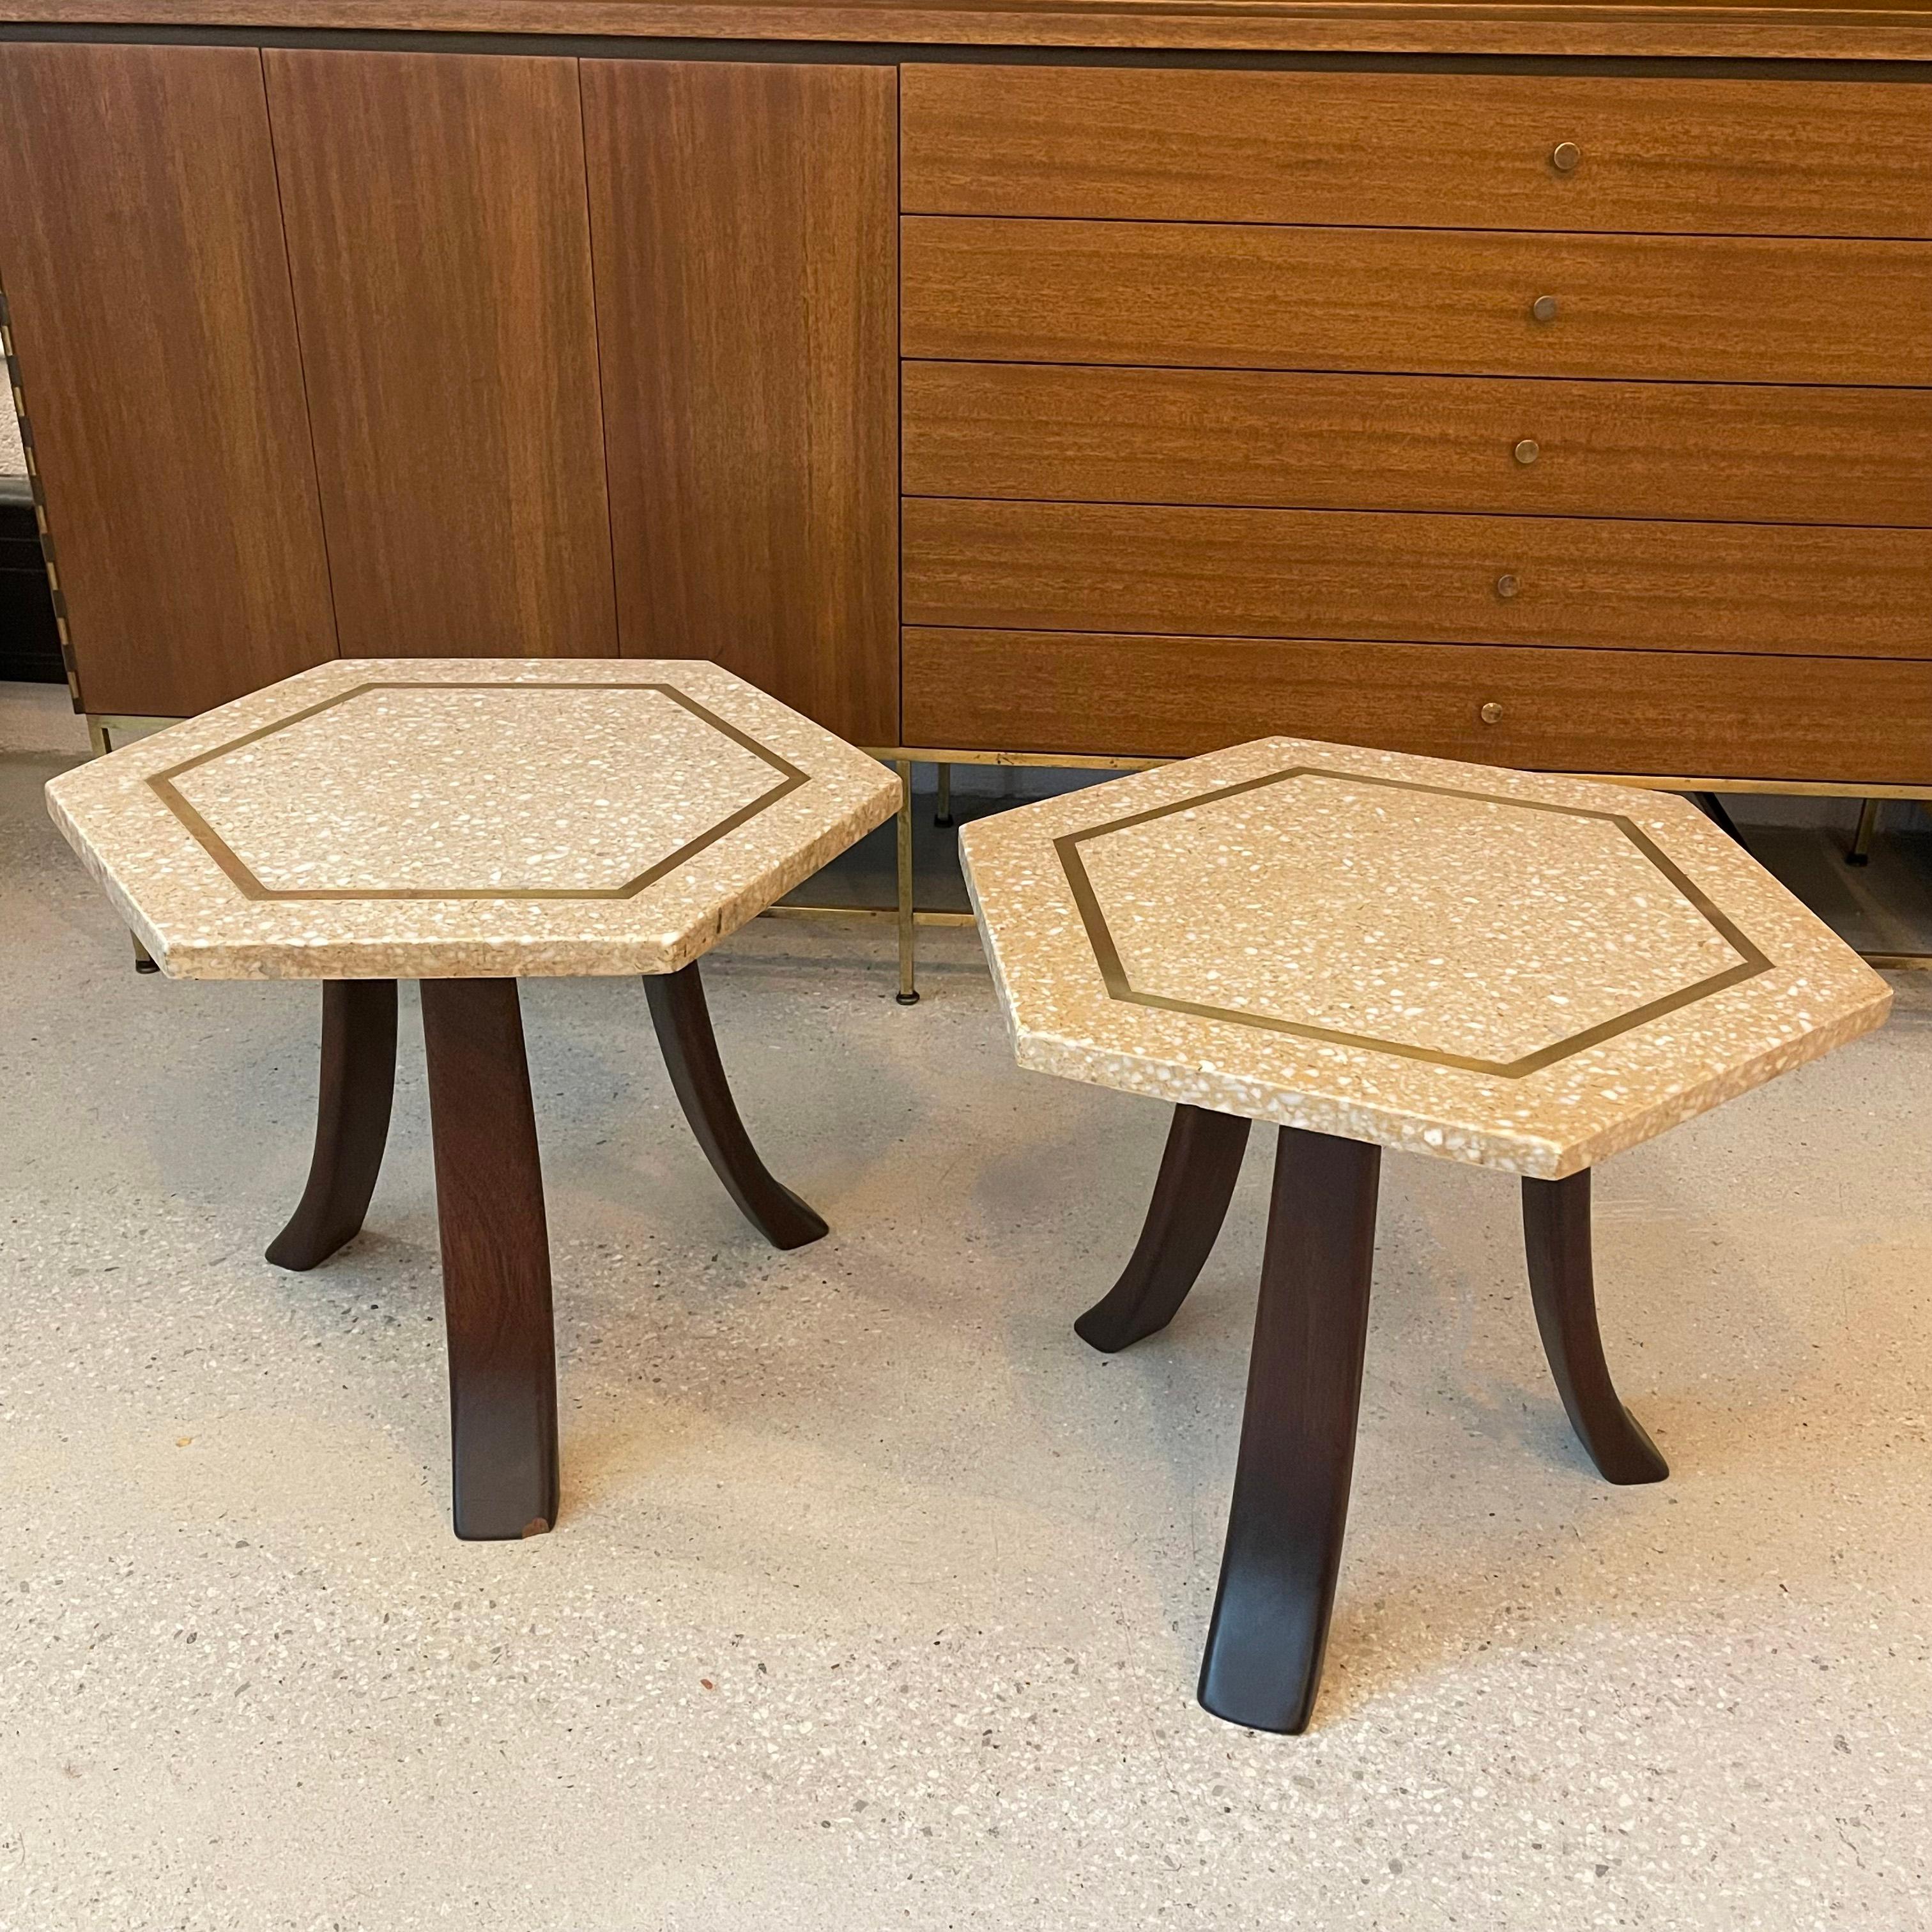 Zwei moderne, marokkanisch beeinflusste Beistelltische von Harvey Probber aus der Mitte des Jahrhunderts mit sechseckigen Terrazzo-Steinplatten mit Messingeinlagen auf drei schrägen Mahagonibeinen. Die Terrazzoplatten haben einen warmen Farbton und